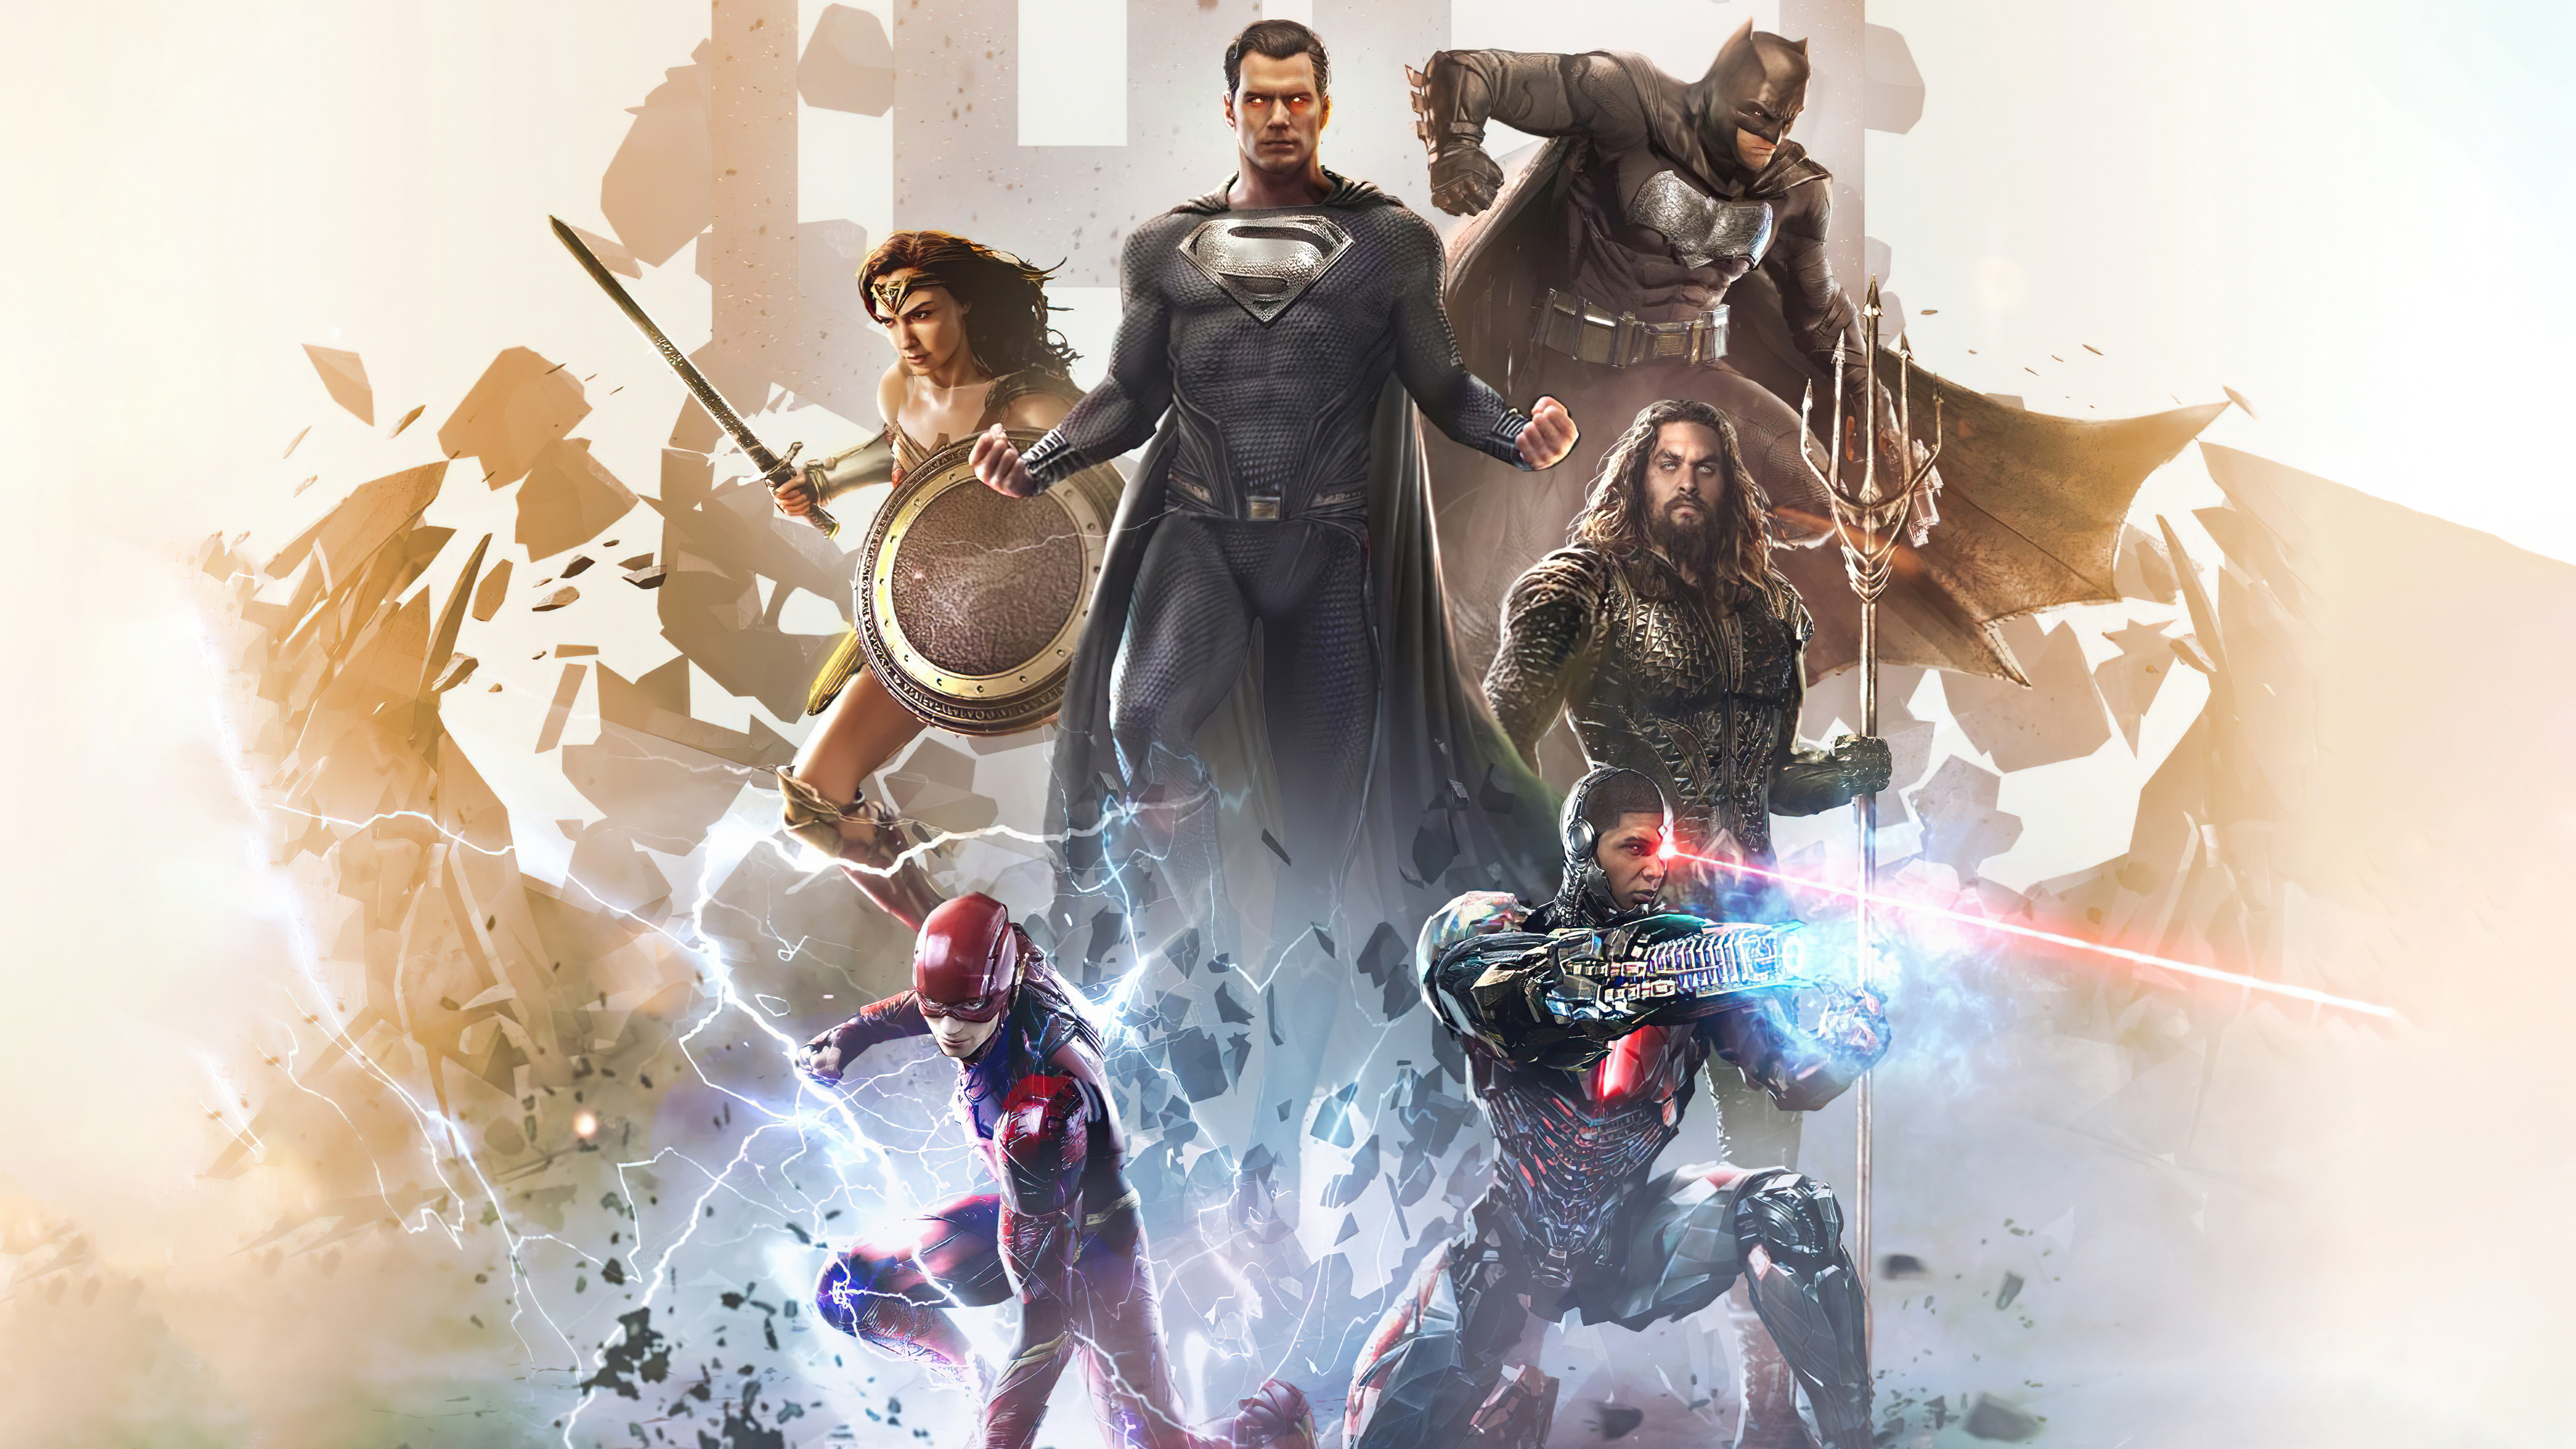 Barry Allen Batman Cyborg DC Comics Flash Justice League Superman Wonder Woman K K HD Zack Snyder’s Justice League